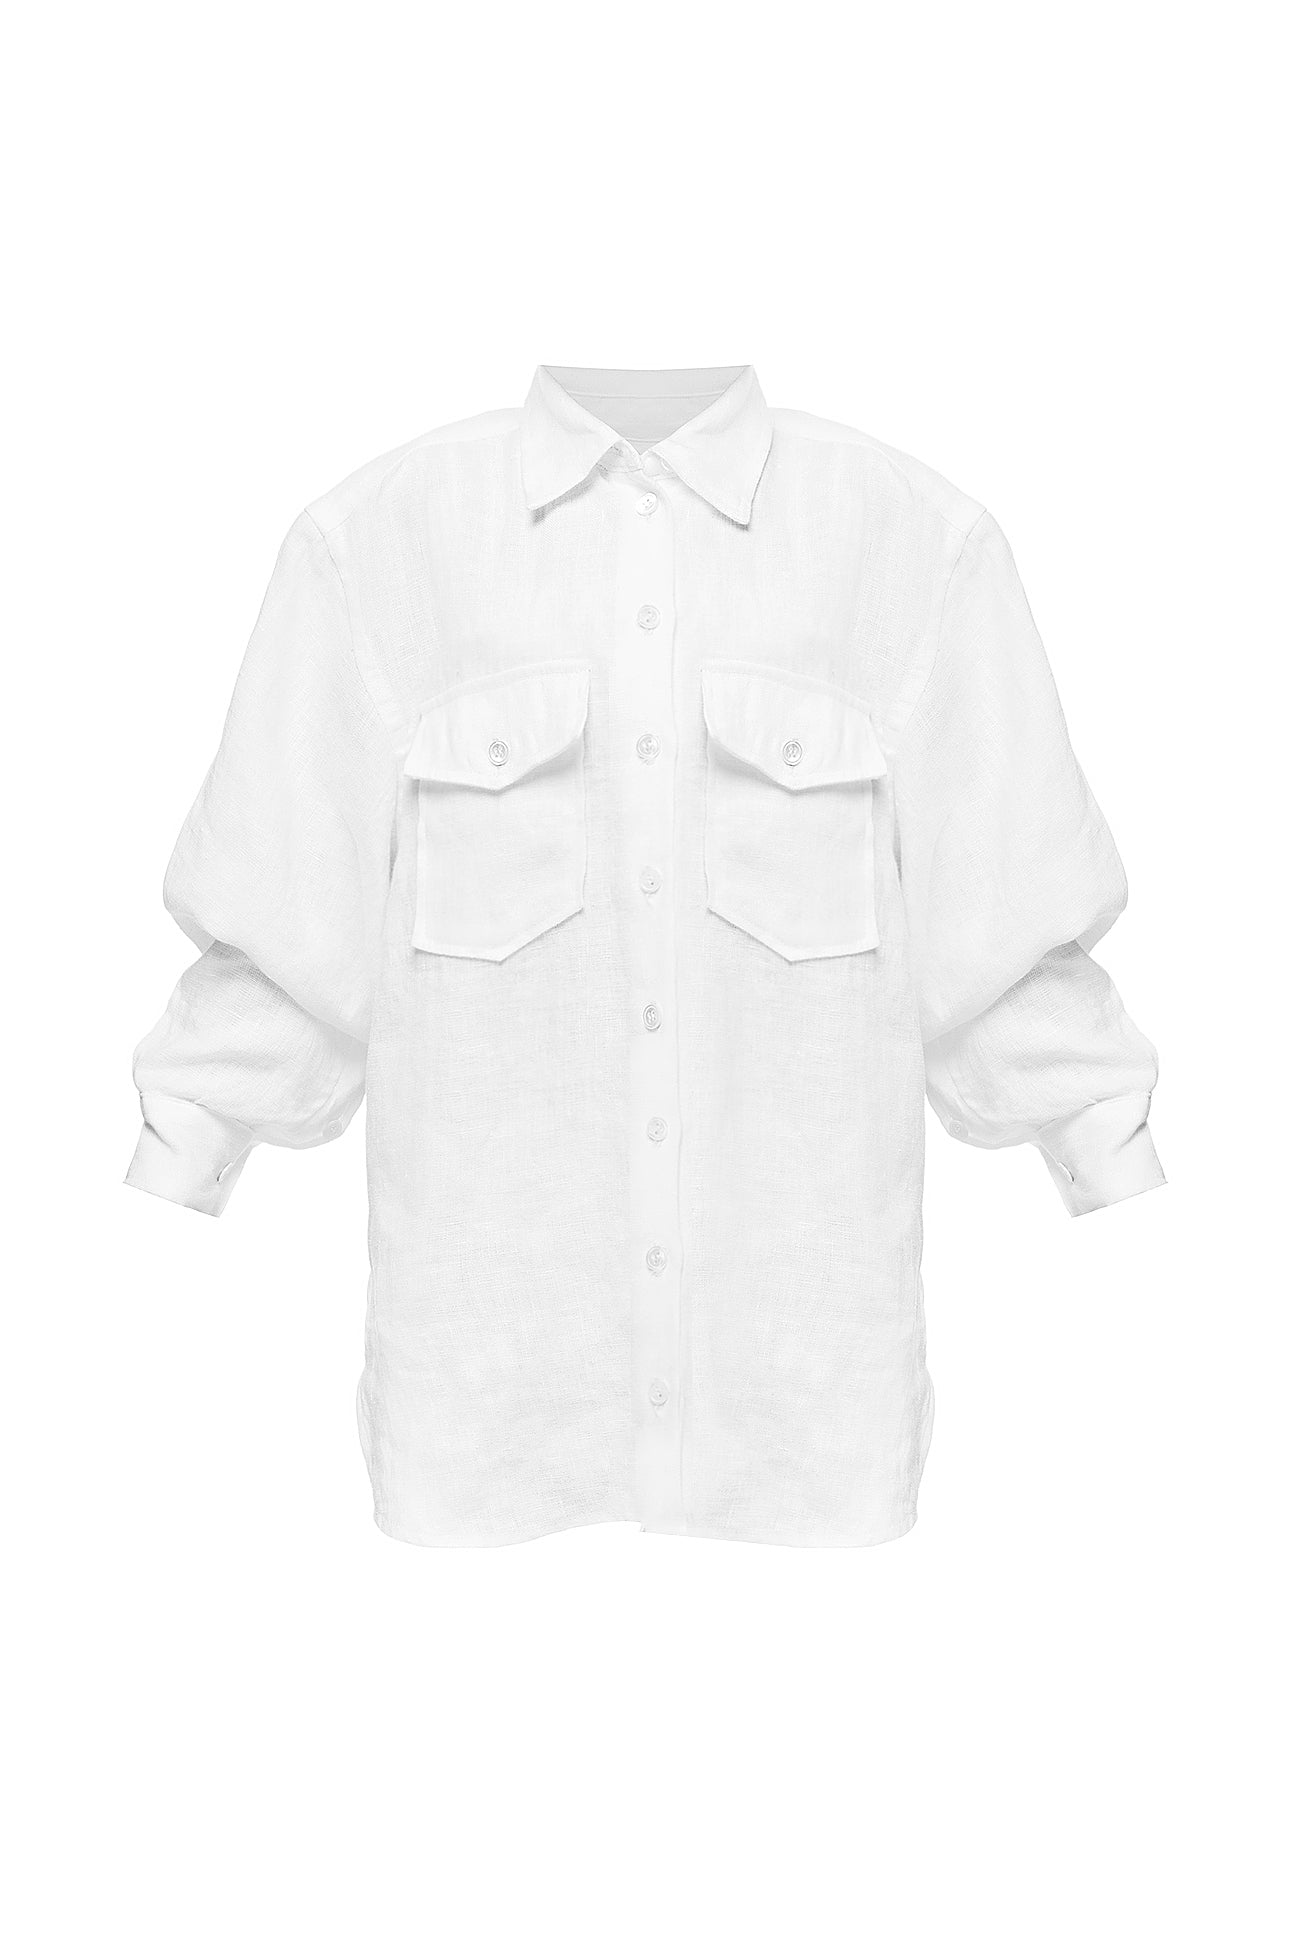 White shirt for kids